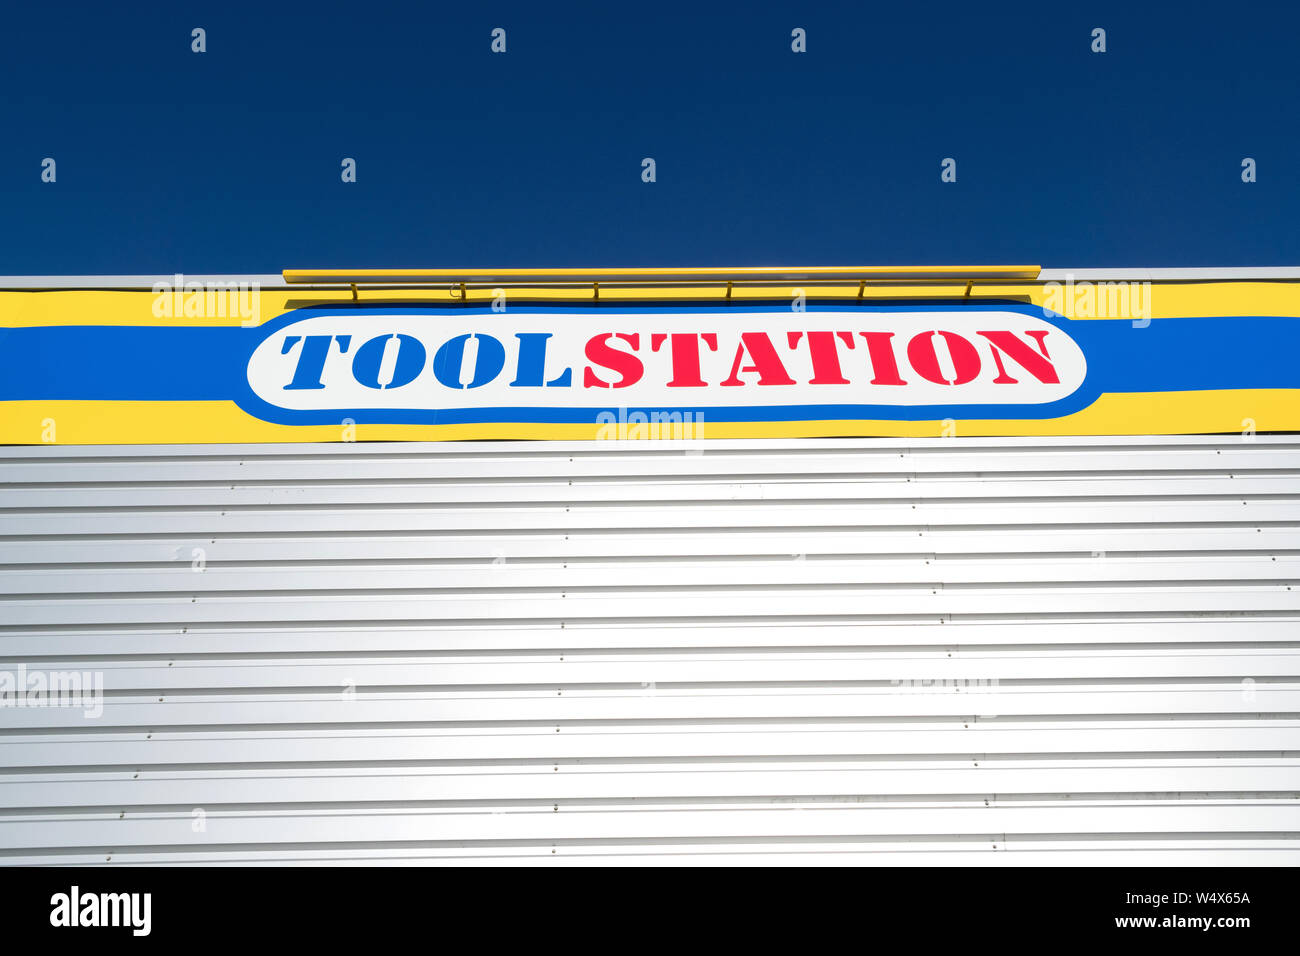 Toolstation signe en direction générale. Toolstation est un fournisseur d'outils, d'accessoires et de produits de construction pour les professionnels et les bricoleurs. Banque D'Images